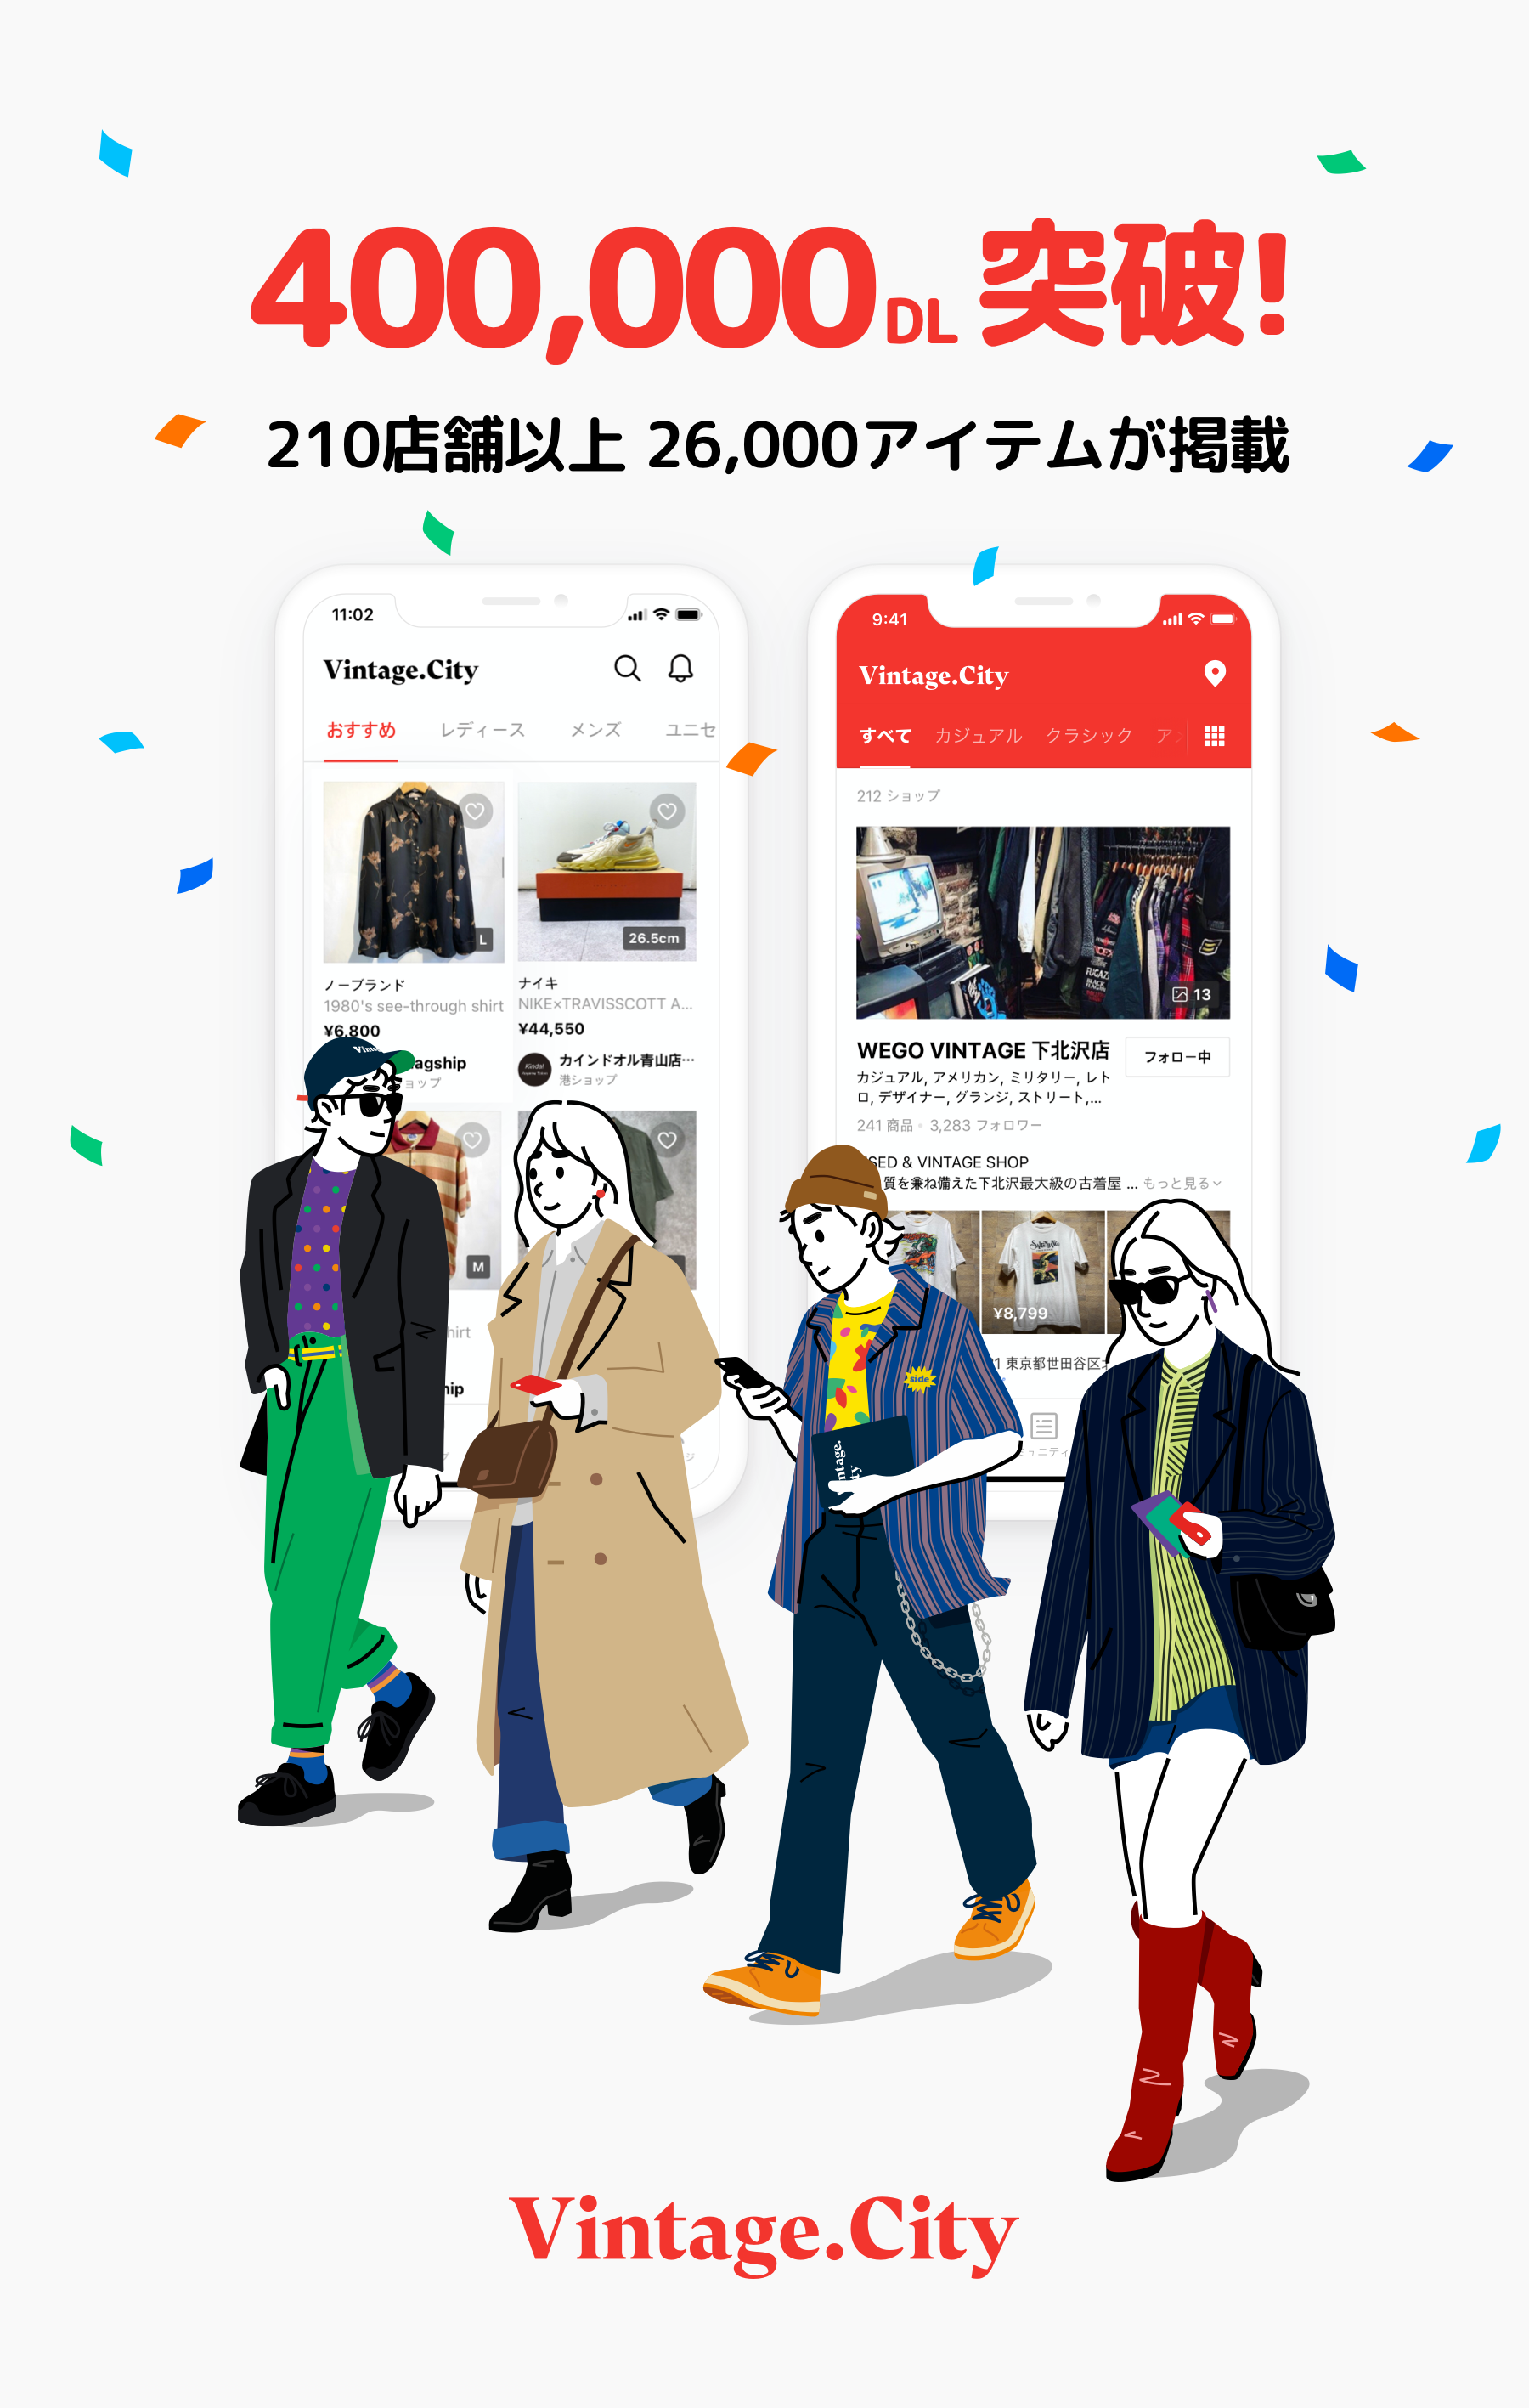 210ショップ＆26,000アイテムが揃う日本初のヴィンテージ・ファッション・アプリVintage.City 累計40万ダウンロードを突破 & Instagramフォローワー10,000人突破のサブ画像1